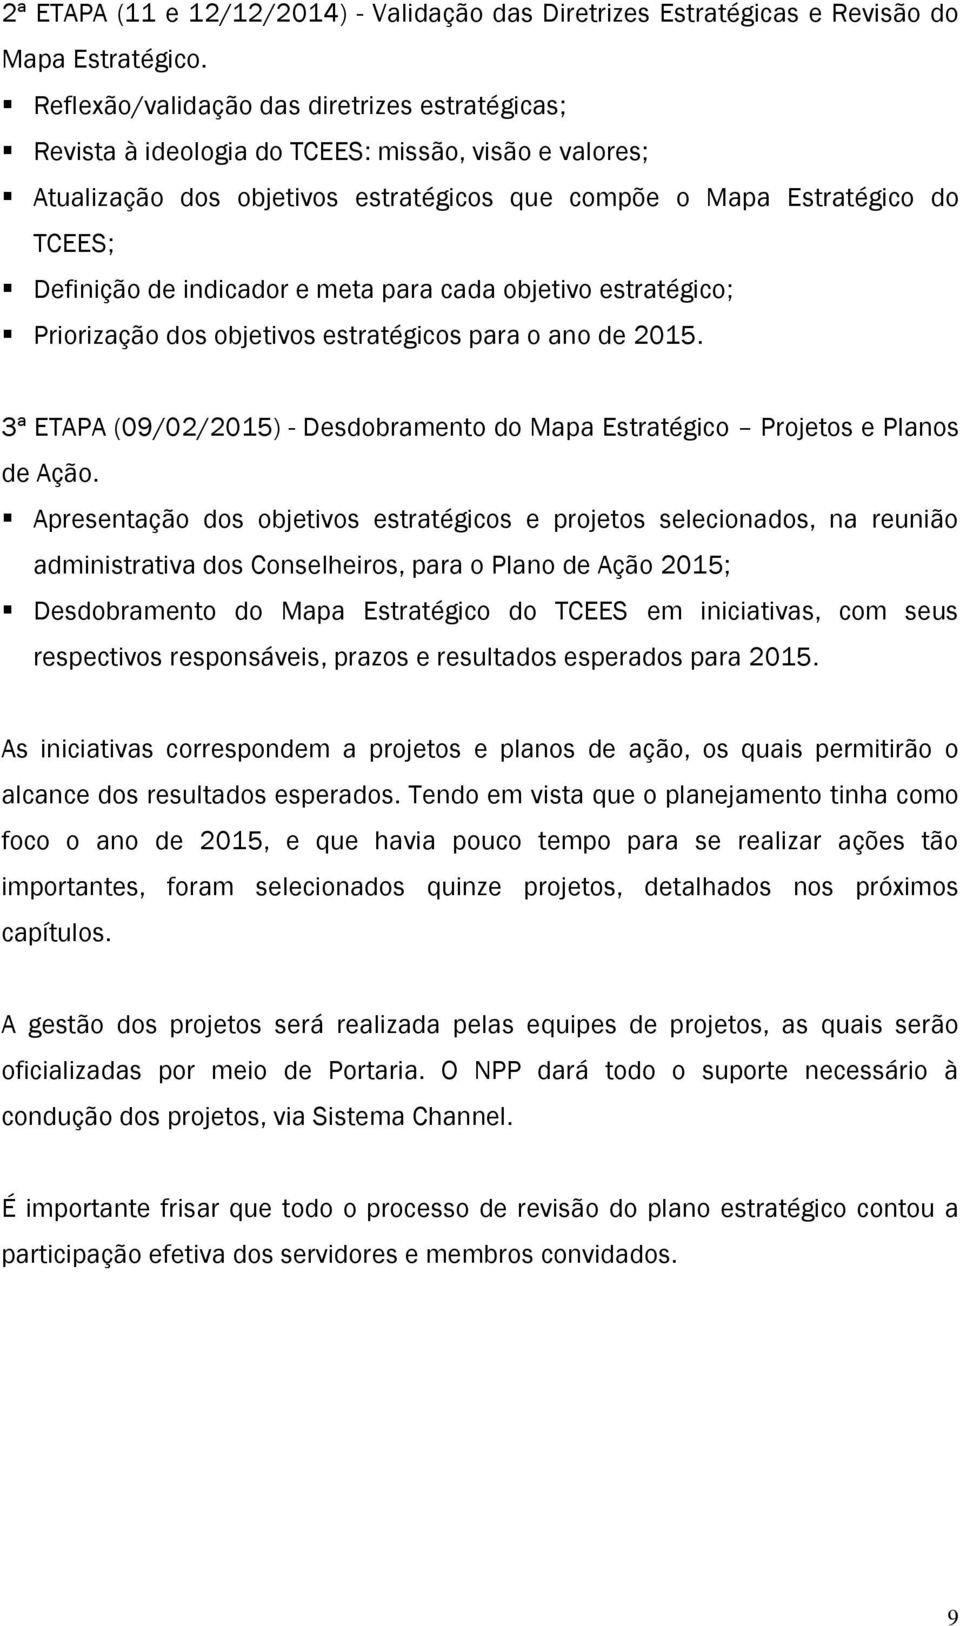 indicador e meta para cada objetivo estratégico; Priorização dos objetivos estratégicos para o ano de 2015. 3ª ETAPA (09/02/2015) - Desdobramento do Mapa Estratégico Projetos e Planos de Ação.